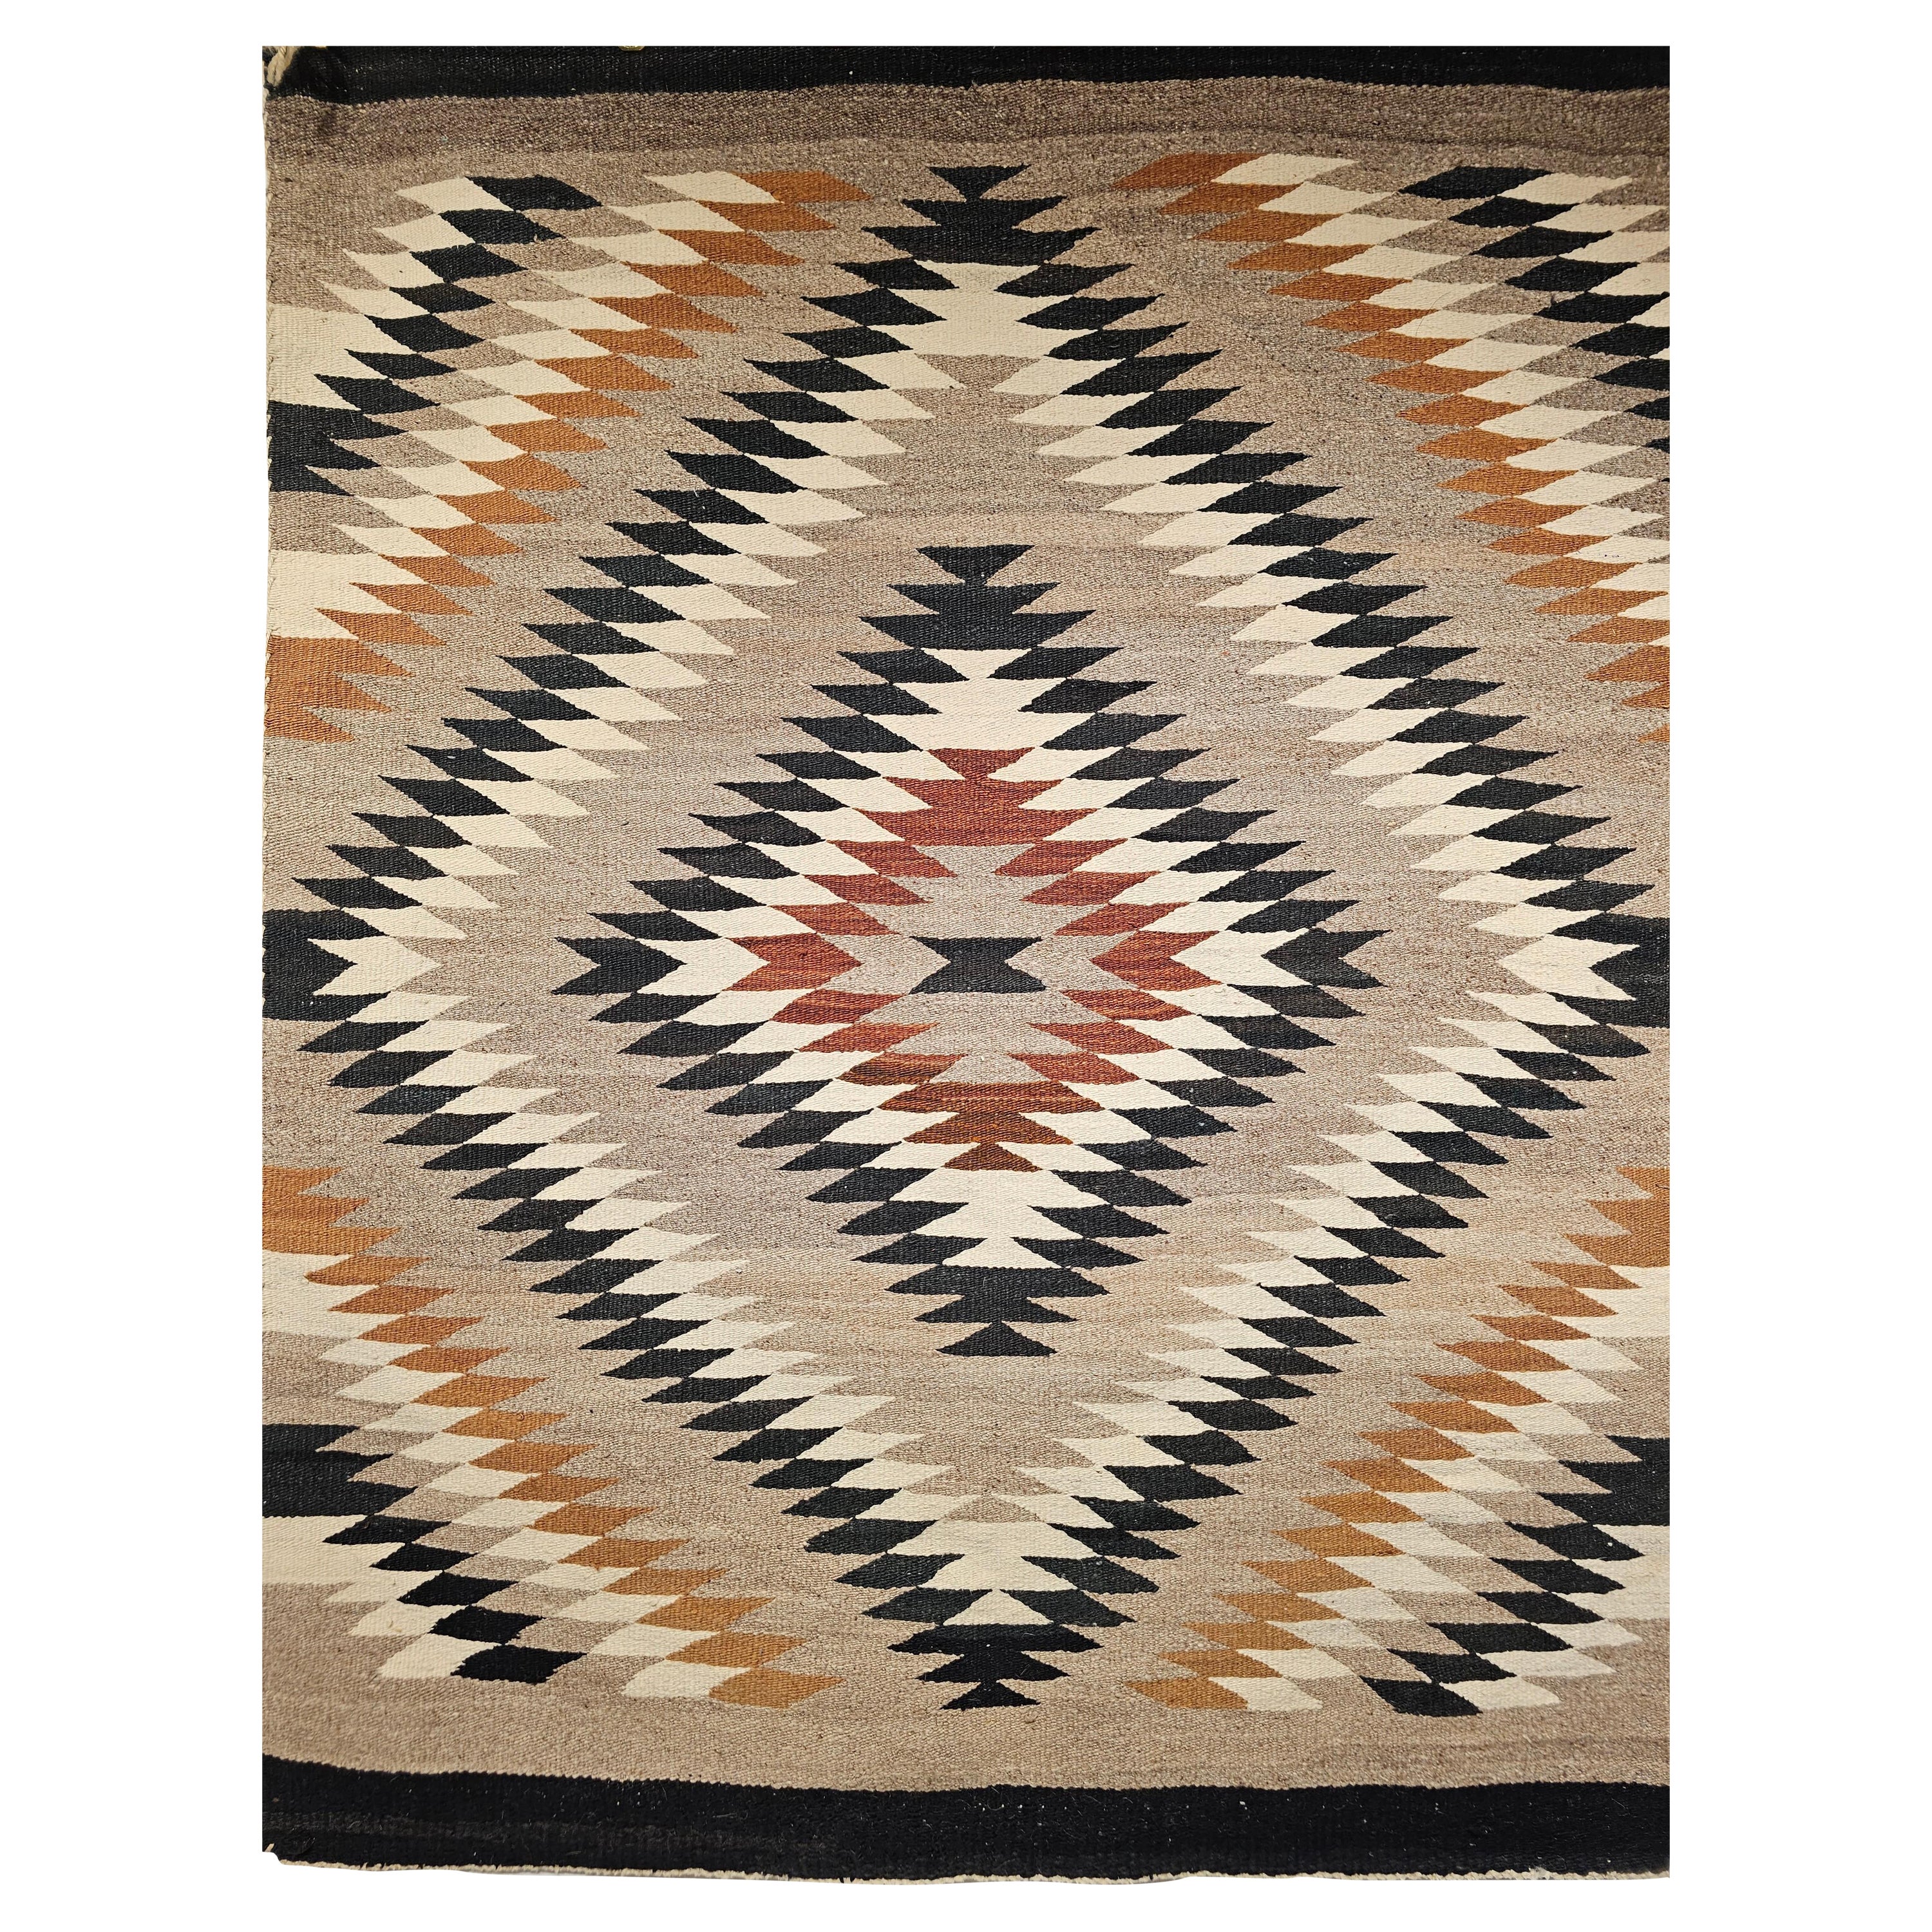 Navajo-Teppich im Vintage-Stil der amerikanischen Ureinwohner mit Auge-Schirm-Muster in Erdtönen